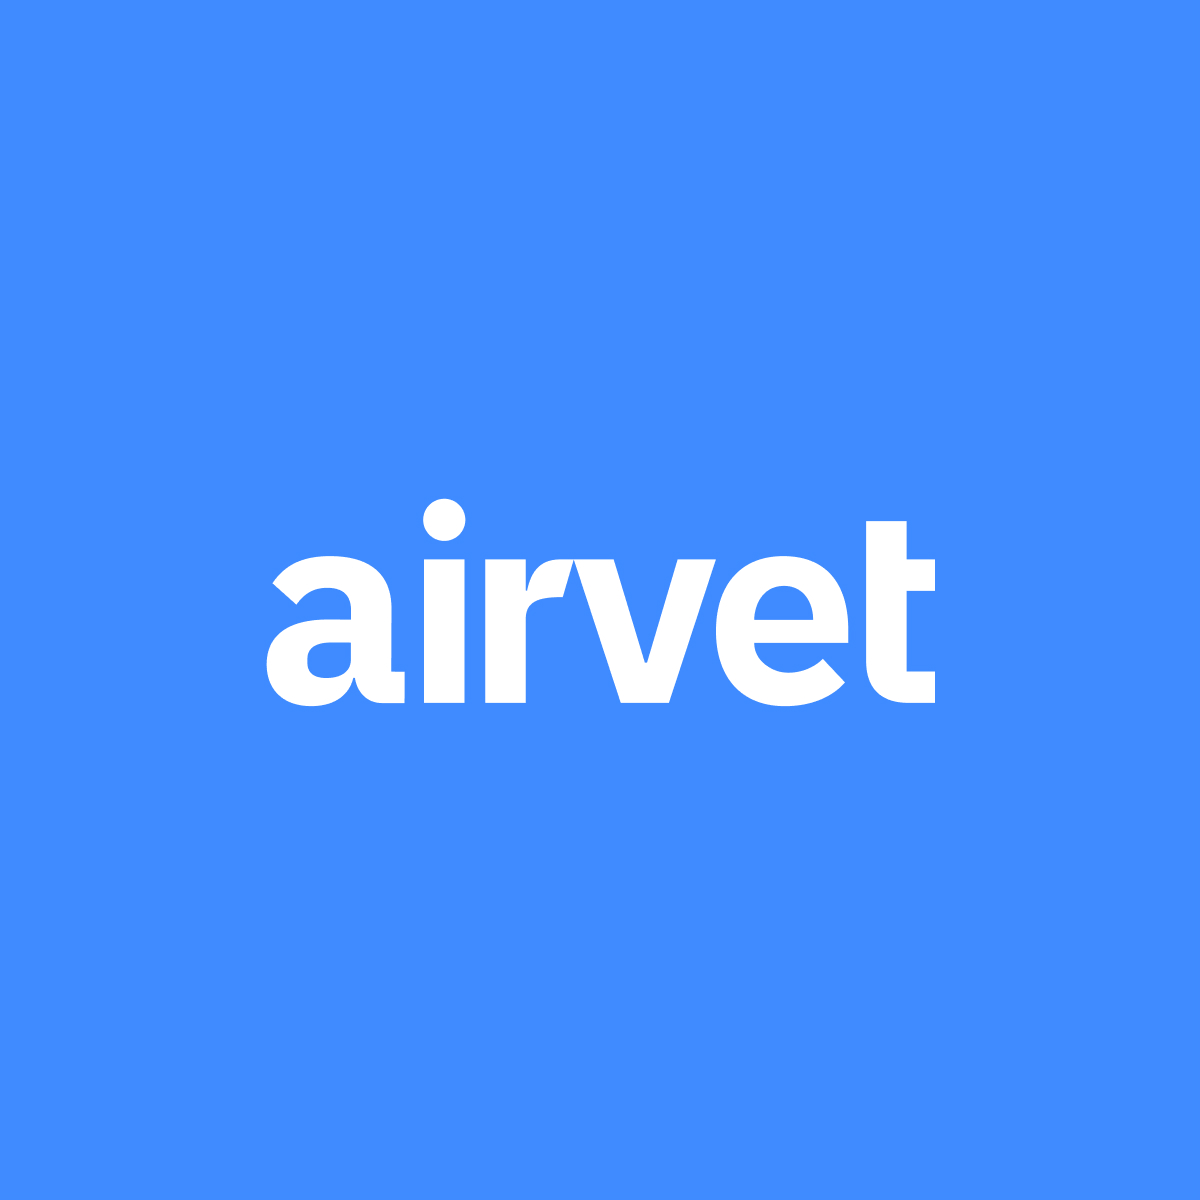 Airvet app